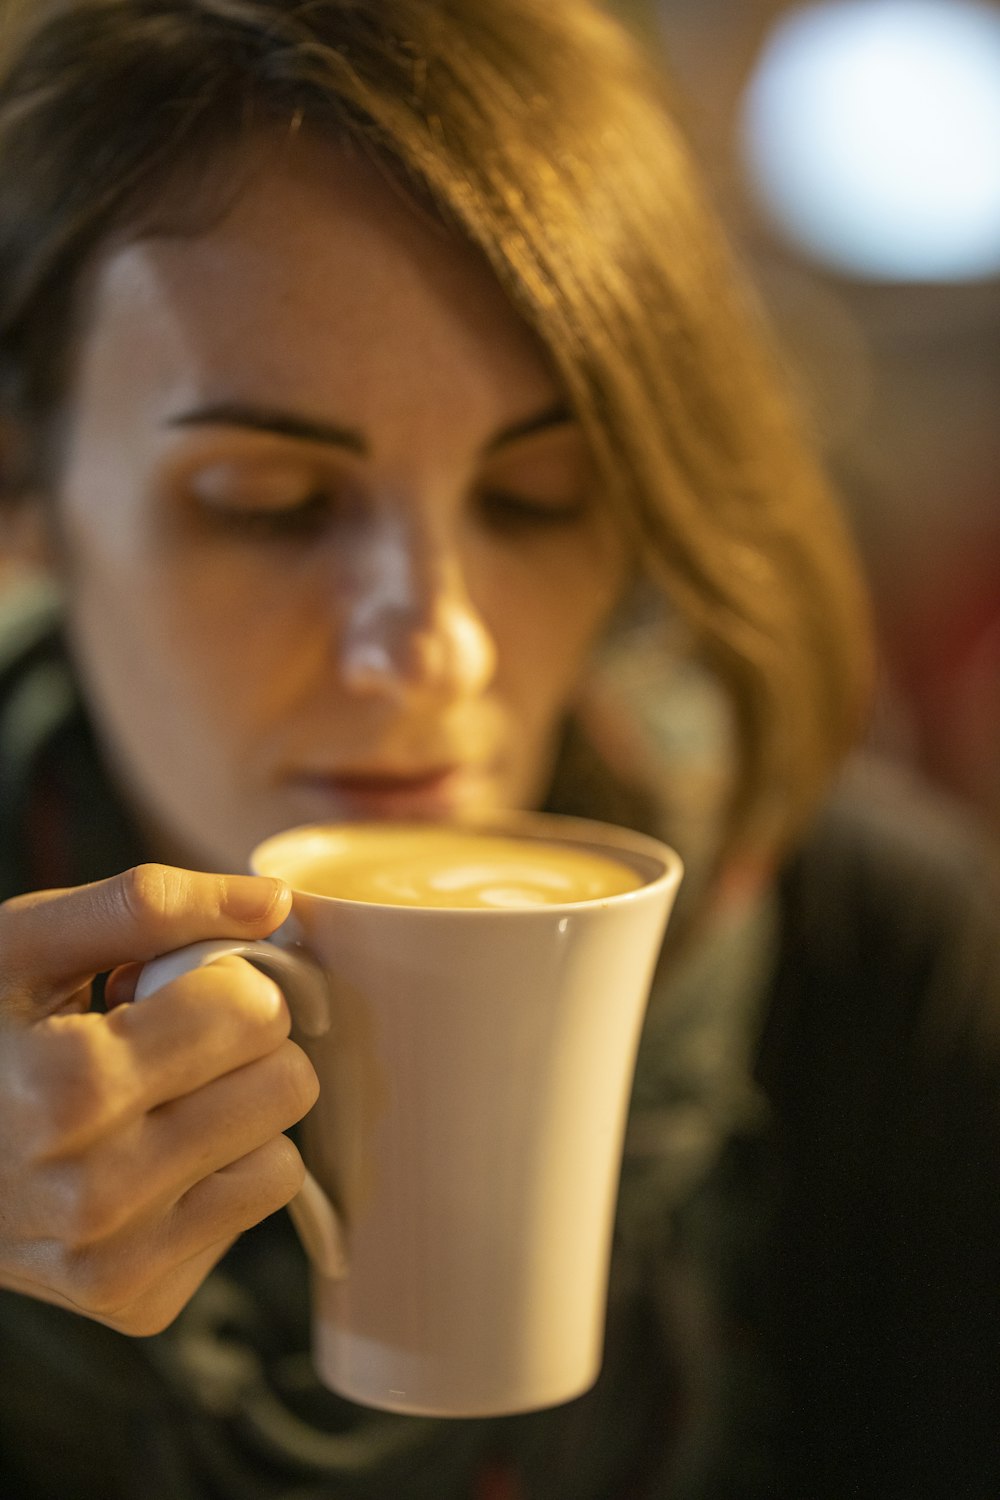 woman drinking on white ceramic mug